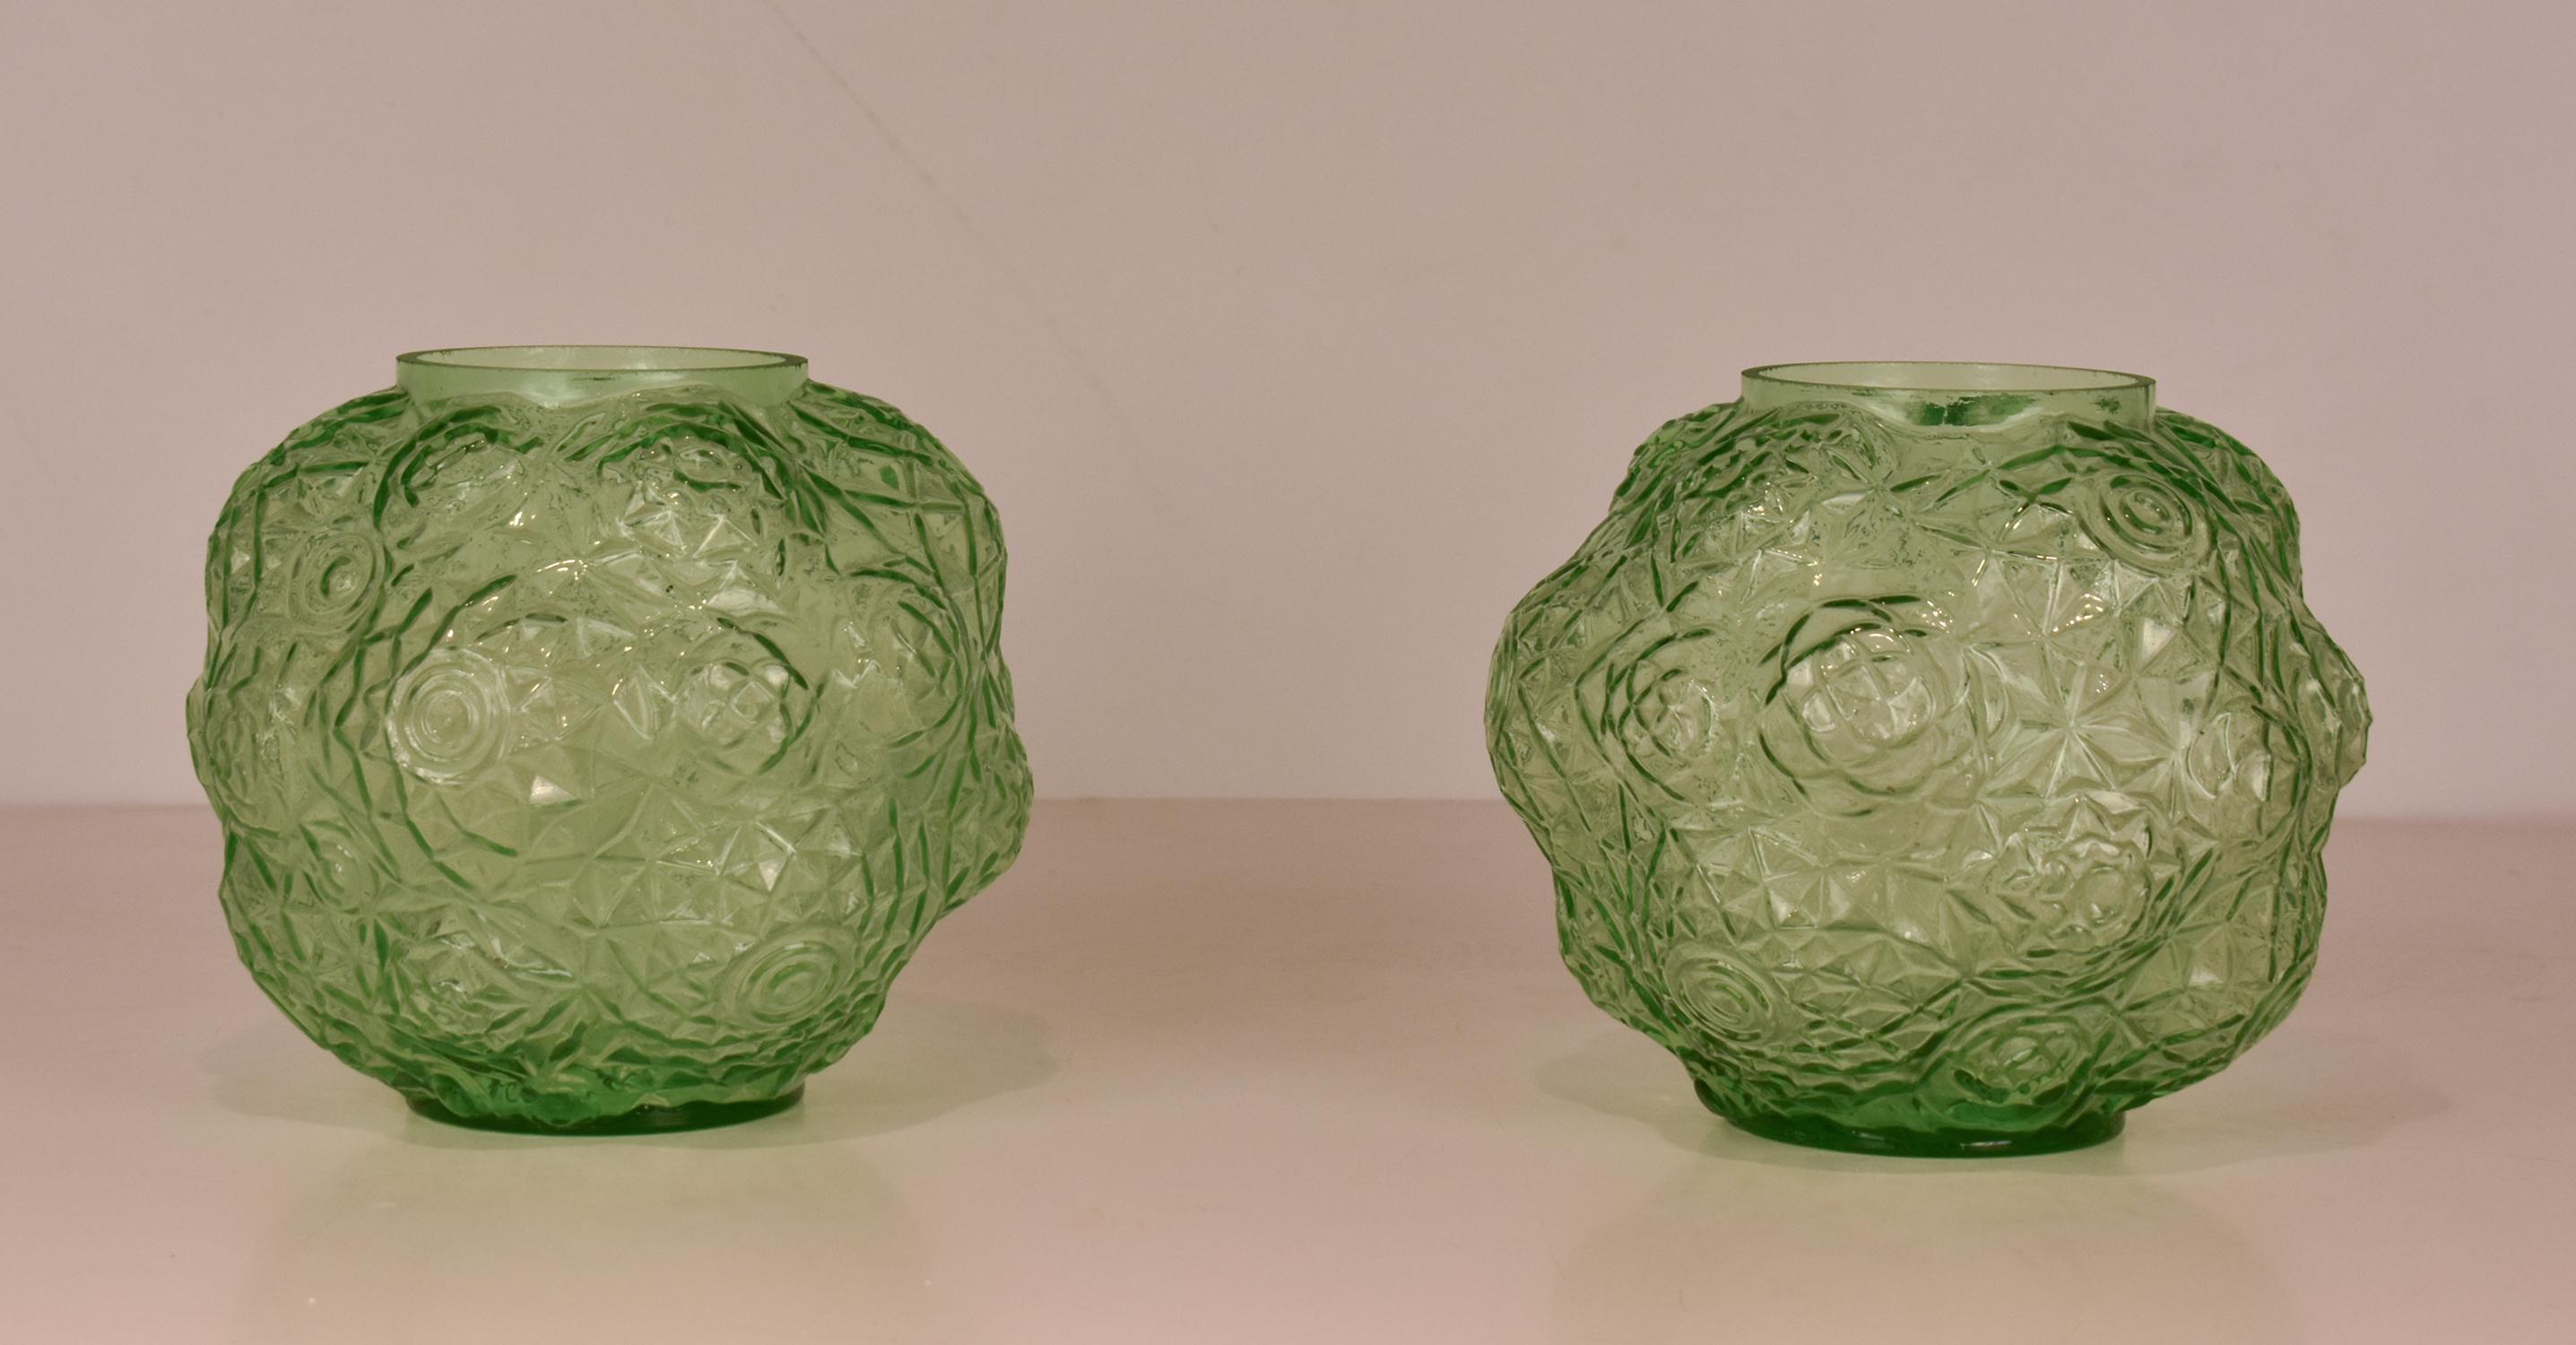 Paire de vases art déco en verre vert. 1930's.
En verre vert avec des motifs géométriques.